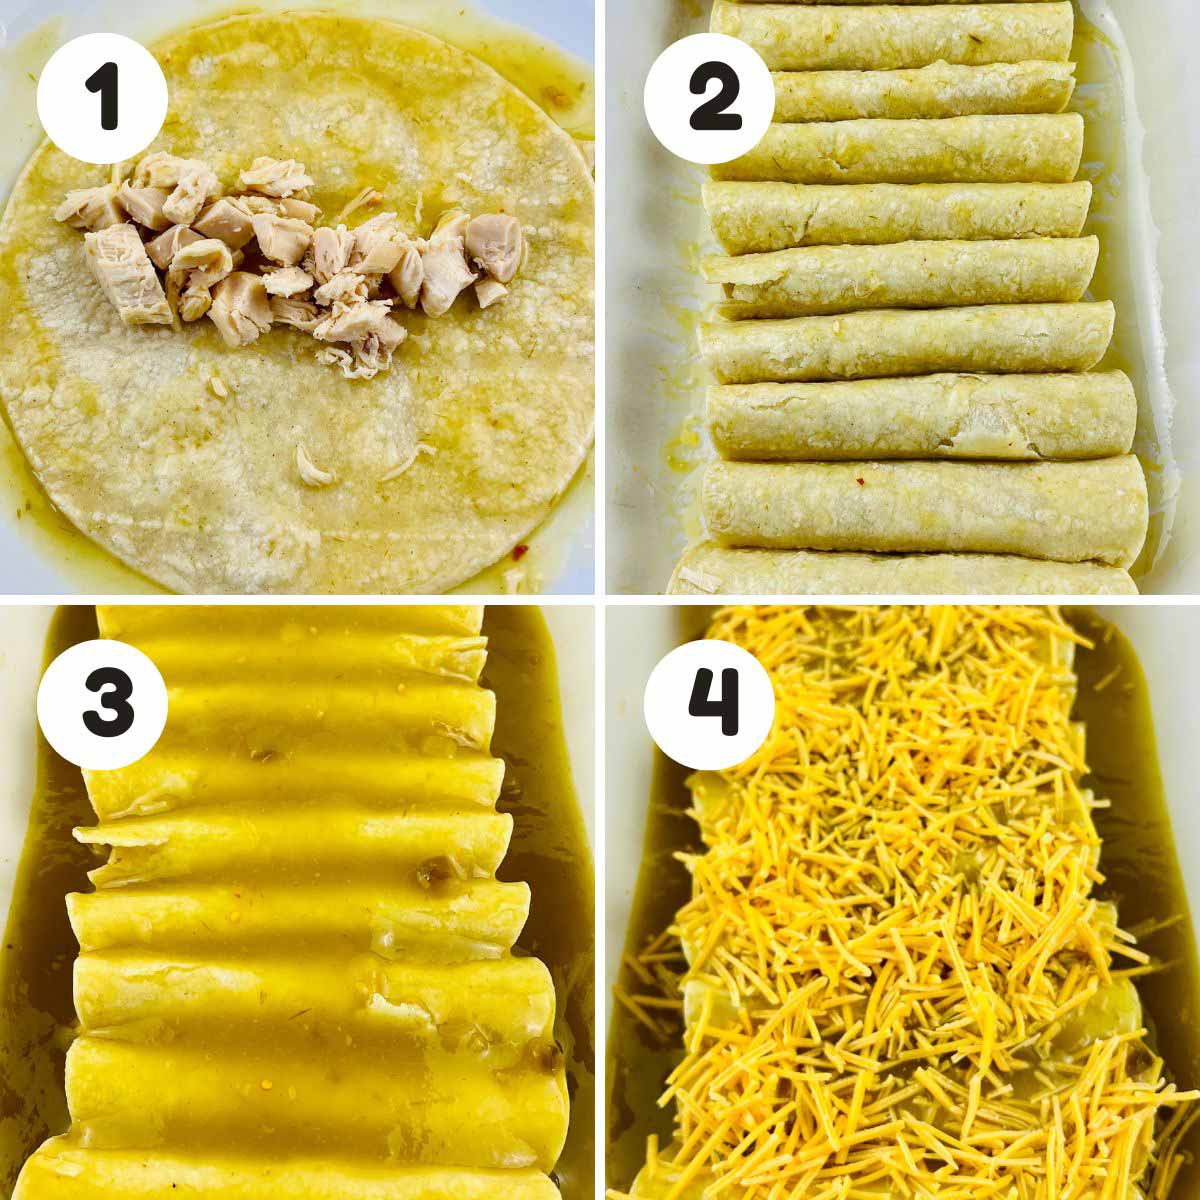 Steps to make the enchiladas.